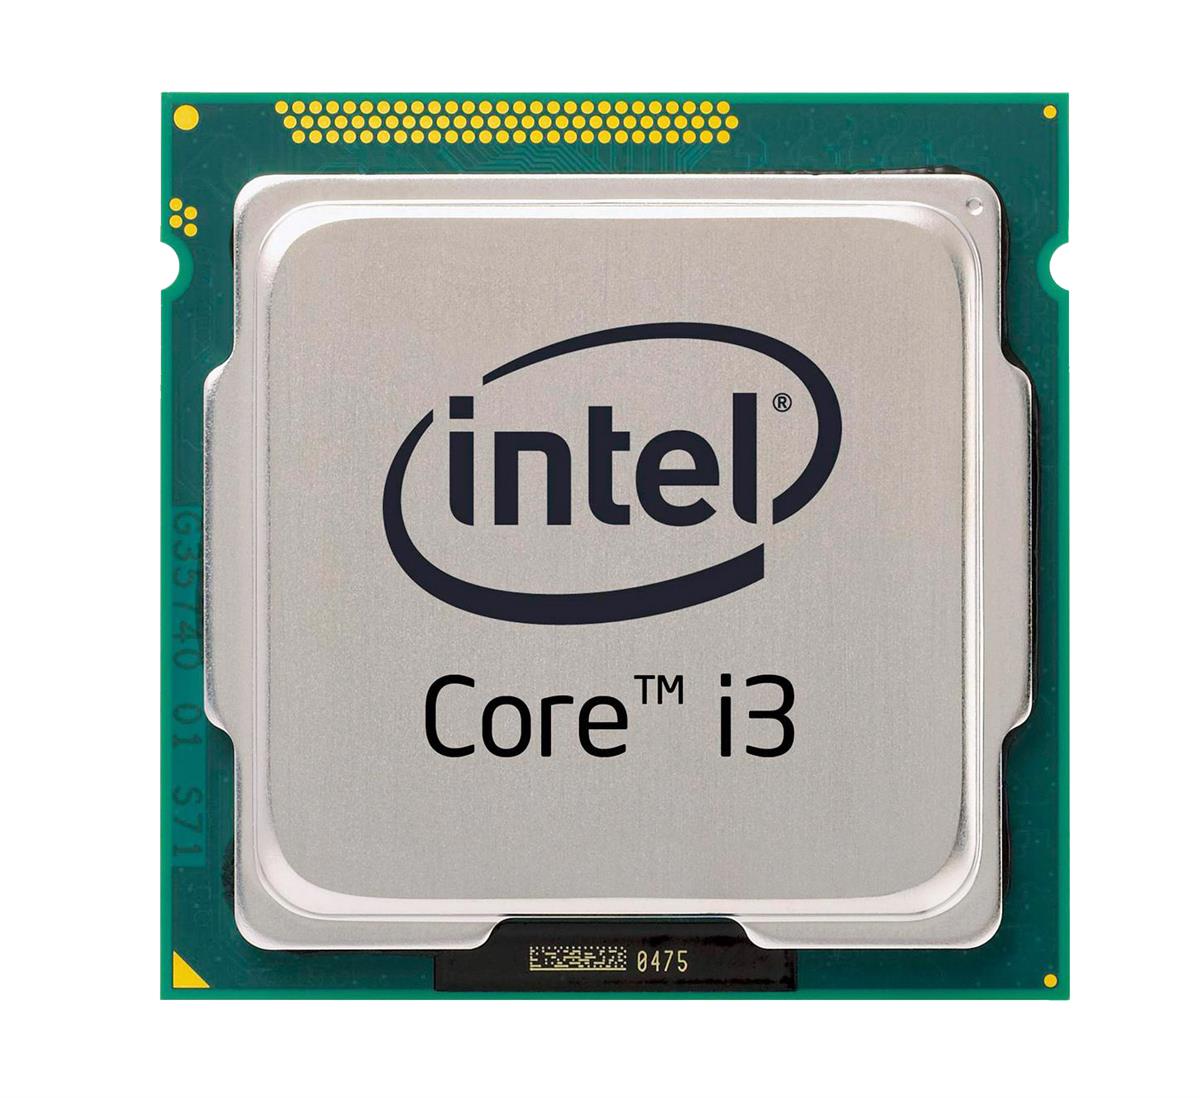 i3-5020U Intel Core i3 Dual Core 2.20GHz 5.00GT/s DMI2 3MB L3 Cache Mobile Processor